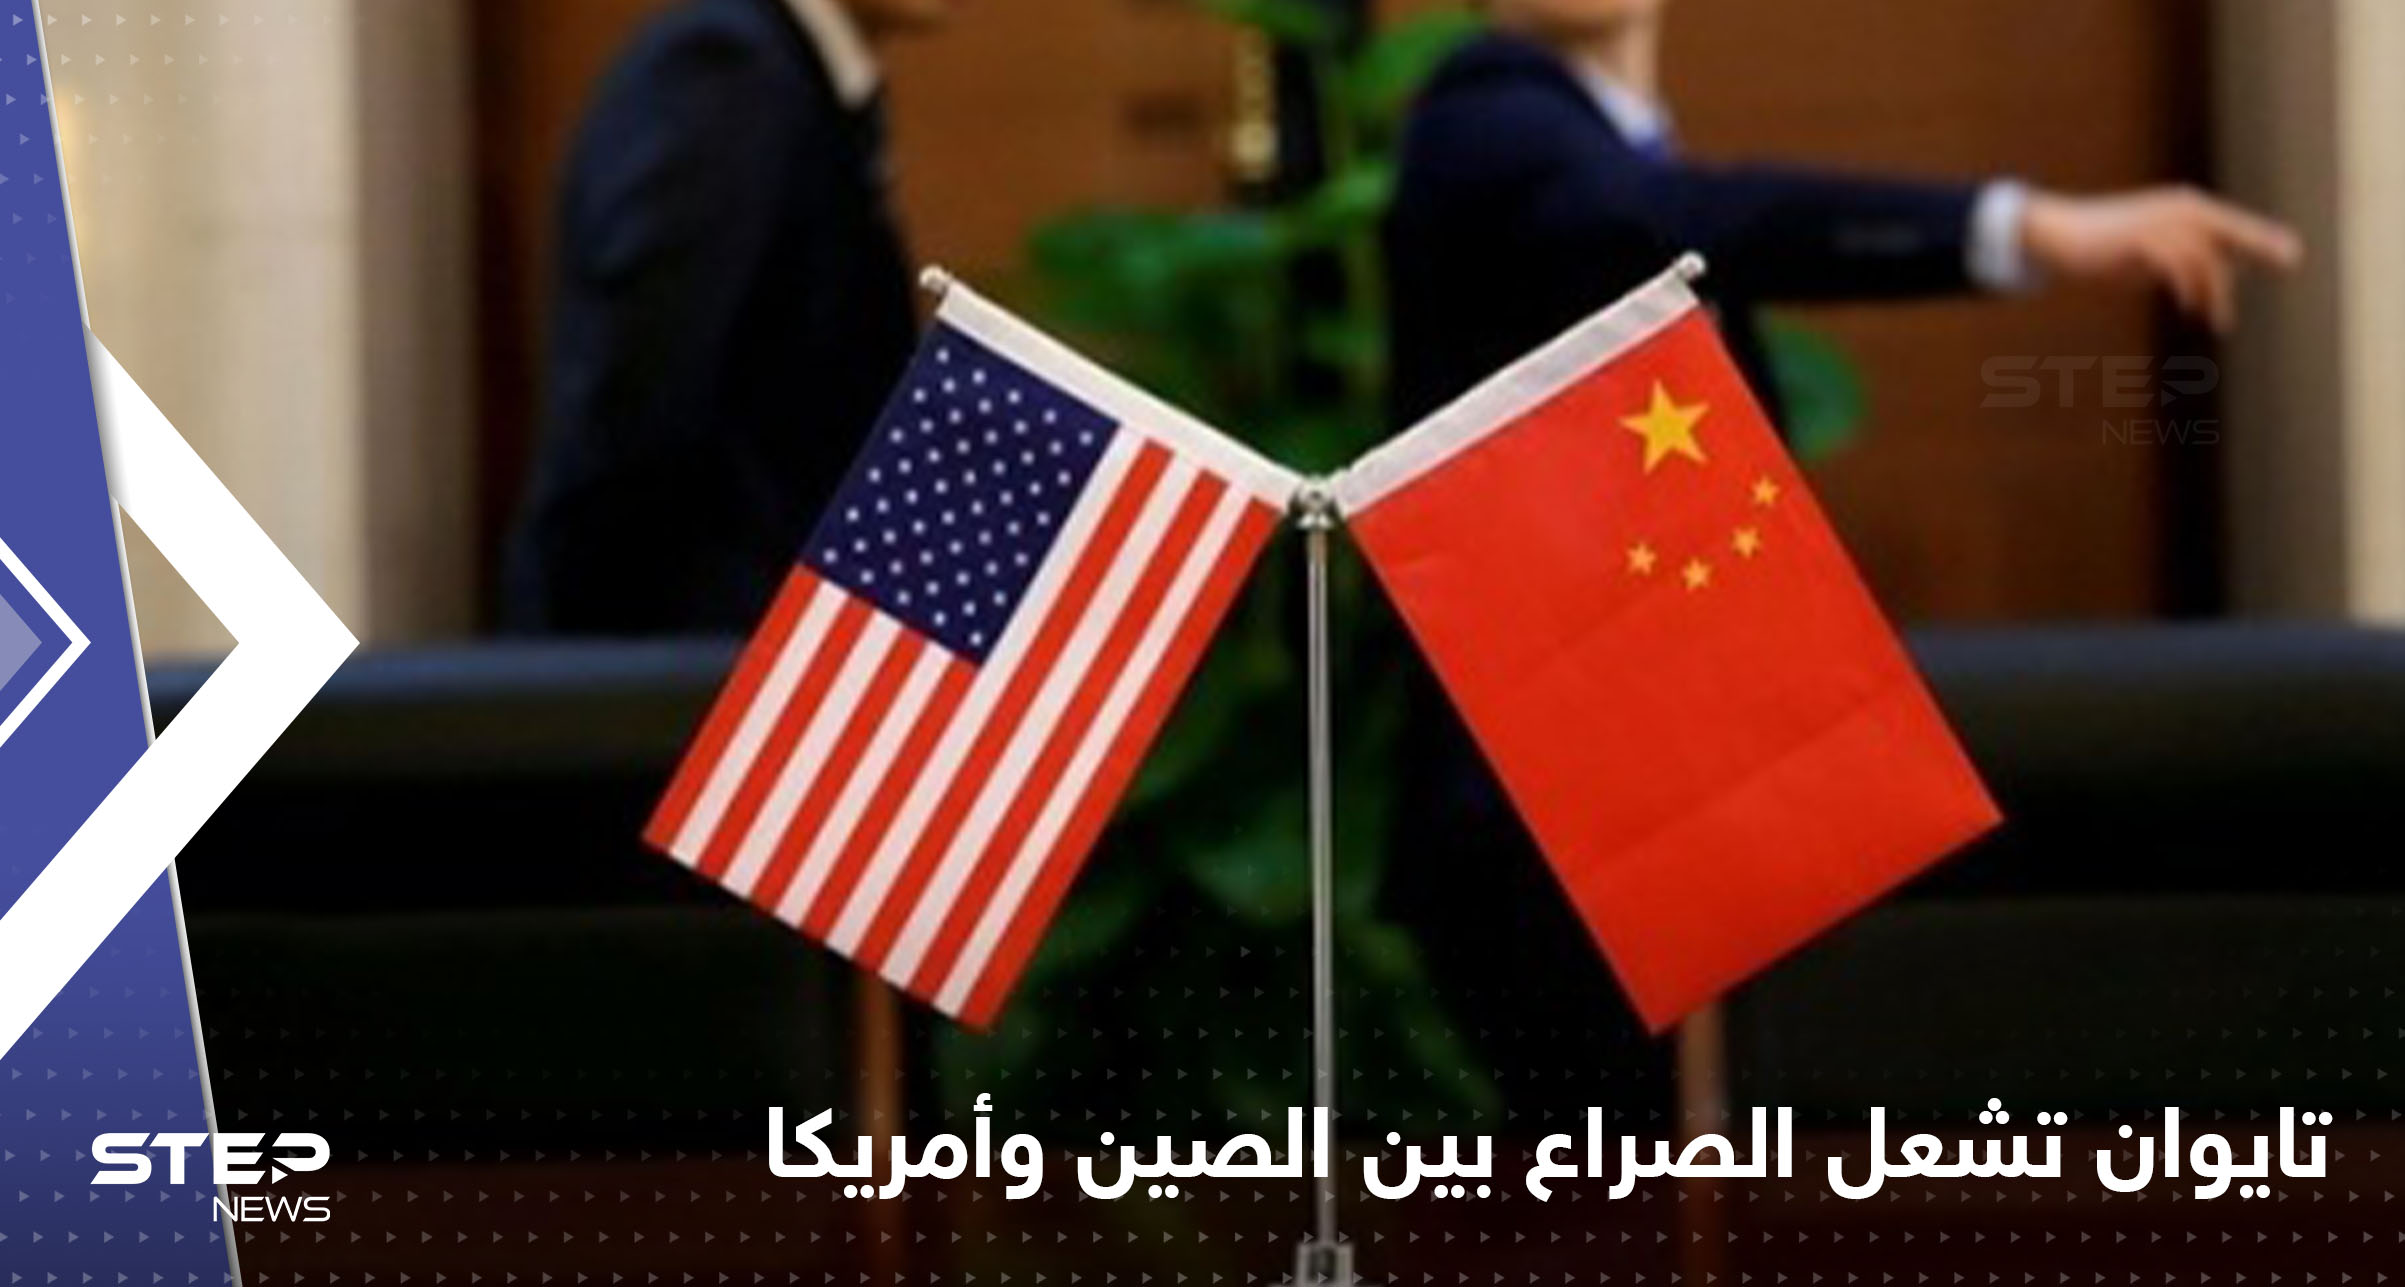 الصين تطالب أمريكا بالتراجع الفوري عن قرار بشأن ملف تايوان محملةً إياها المسؤولية